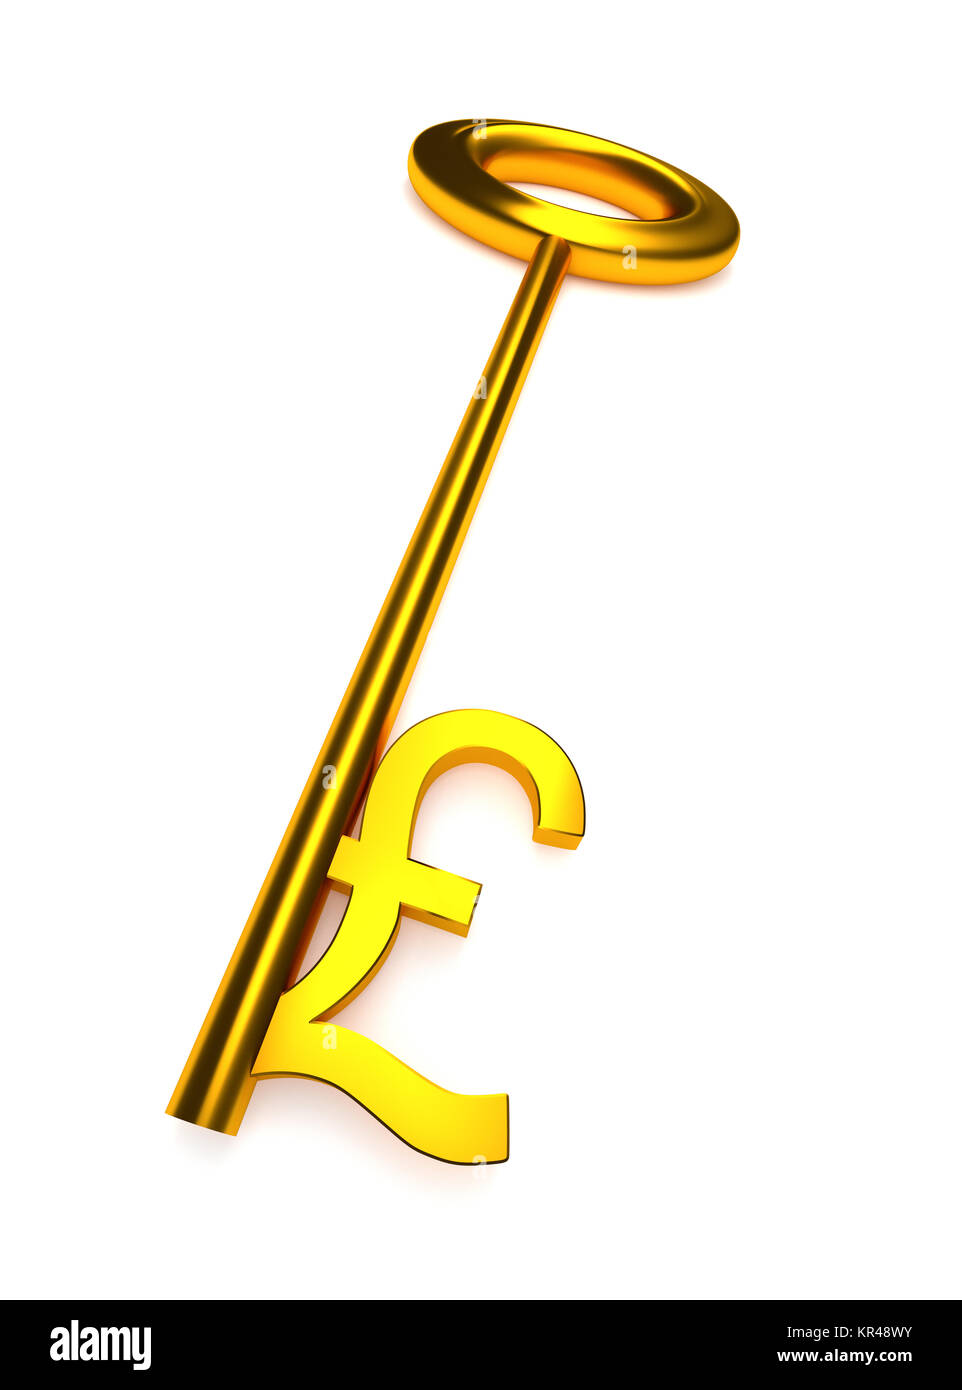 Golden key with a pound icon Stock Photo